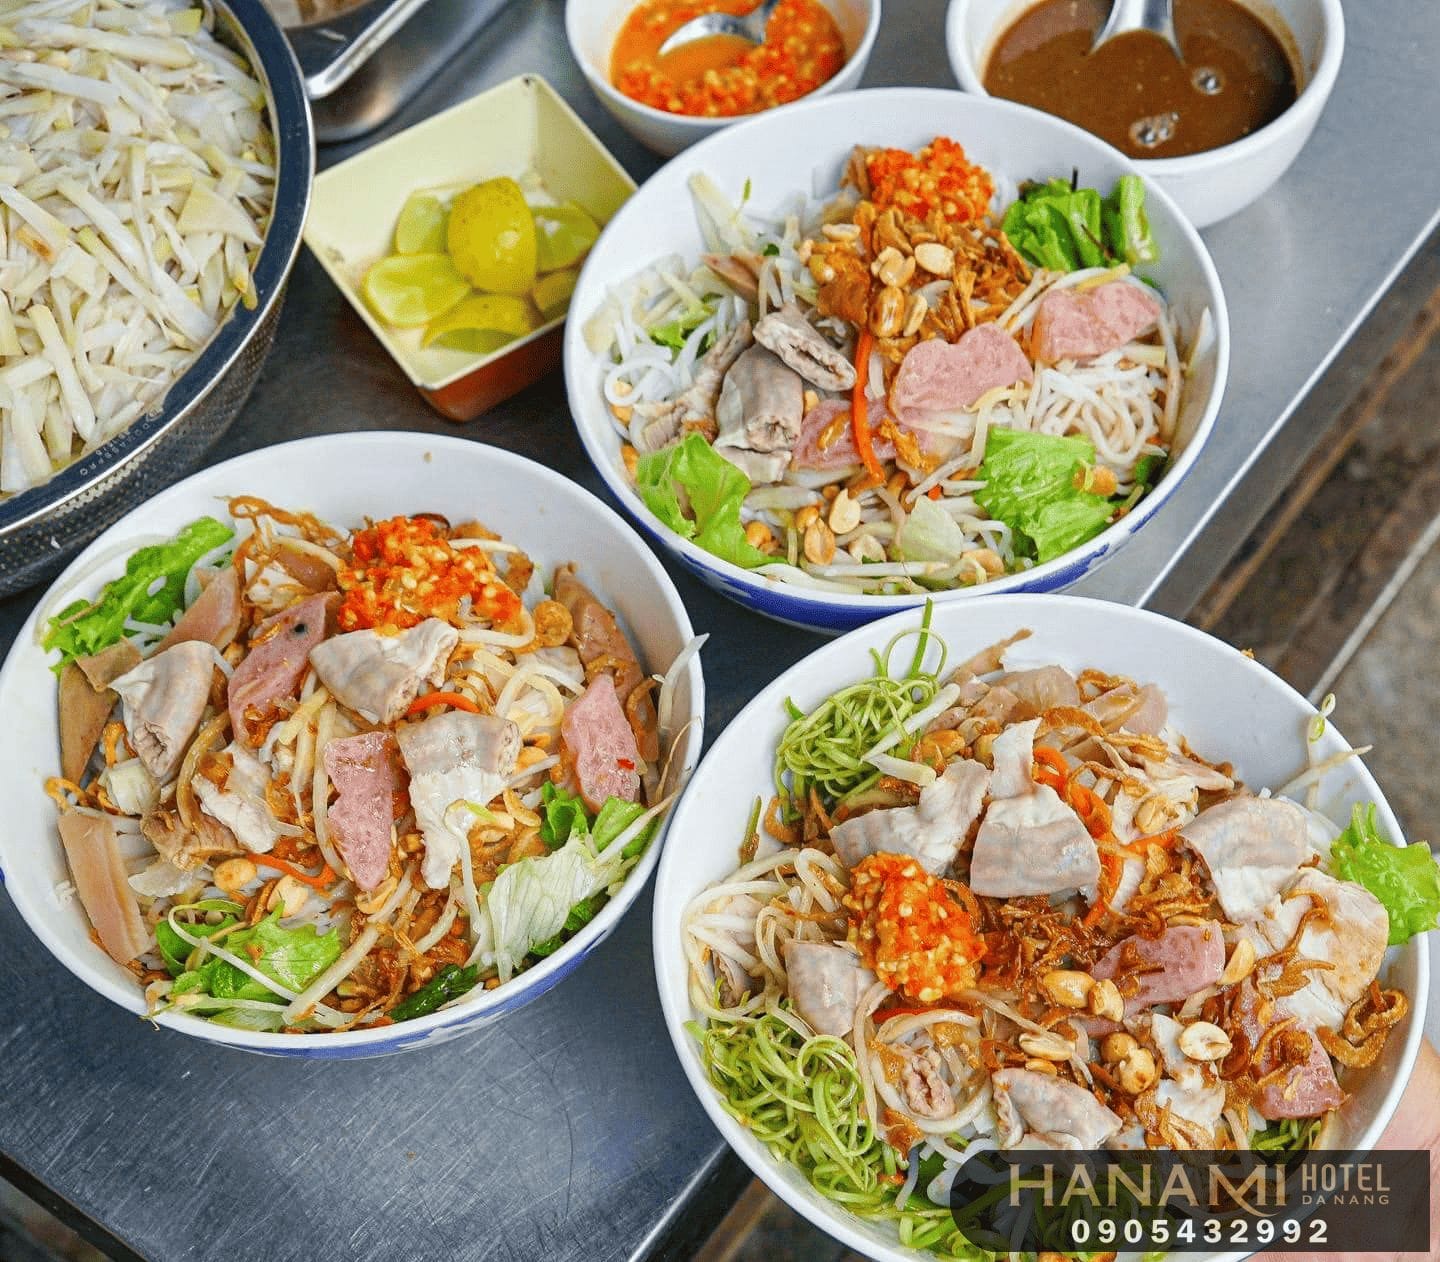 delicious restaurants in Son Tra Da Nang